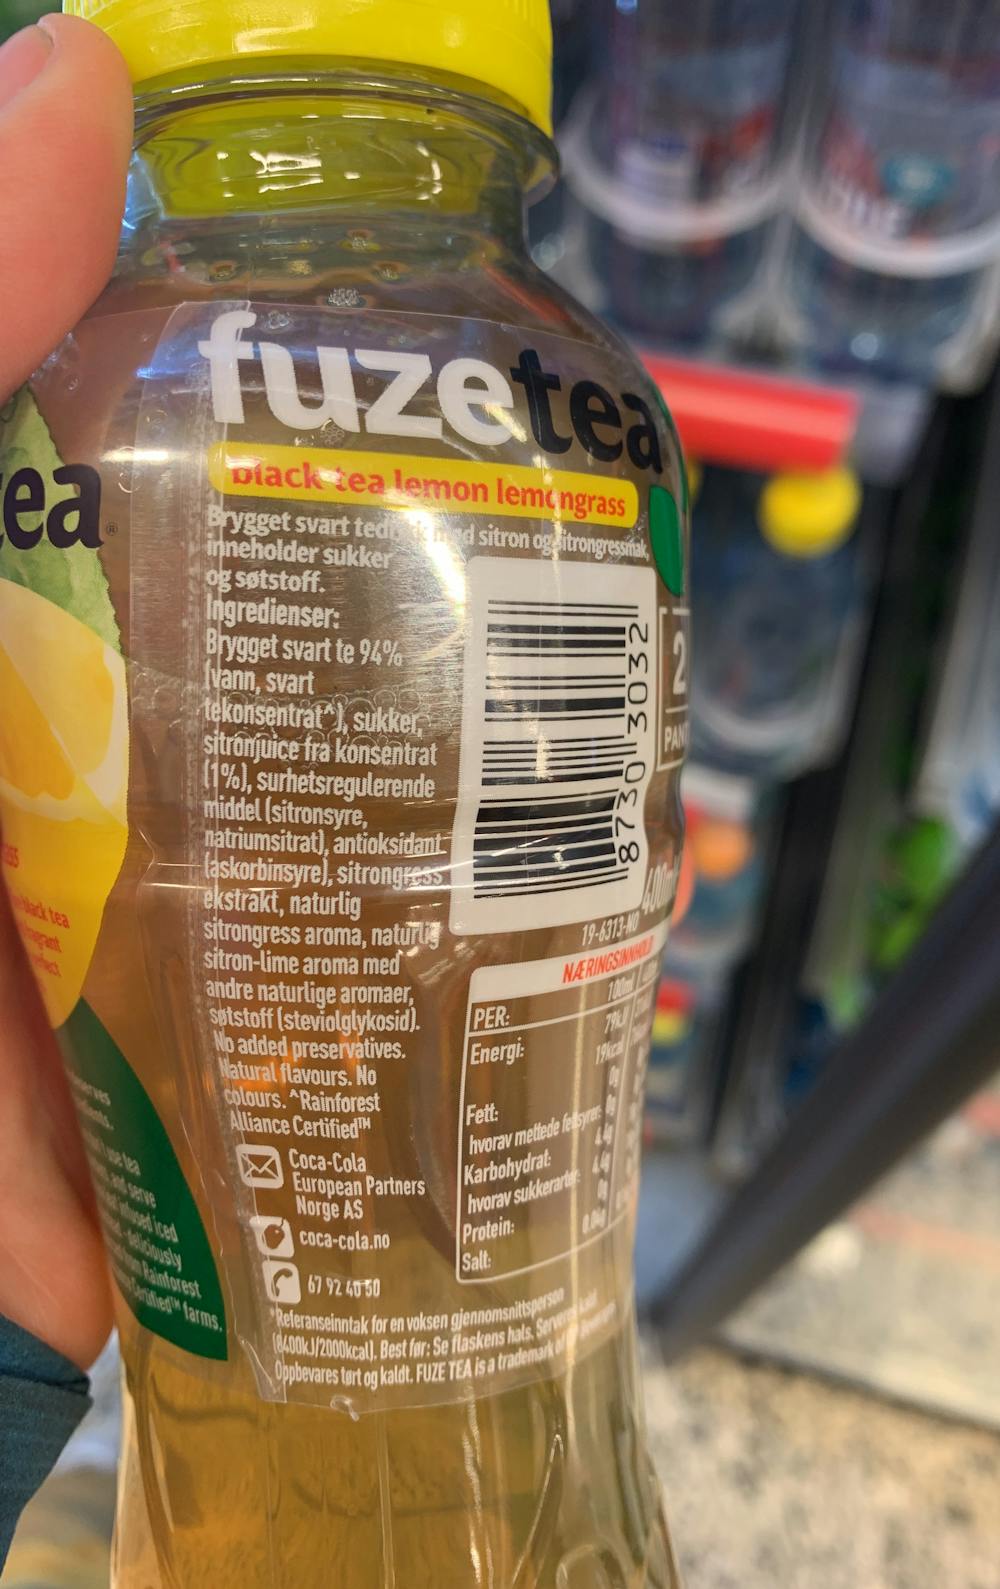 Ingredienslisten til Fuze tea lemon & lemongrass, Fuze tea